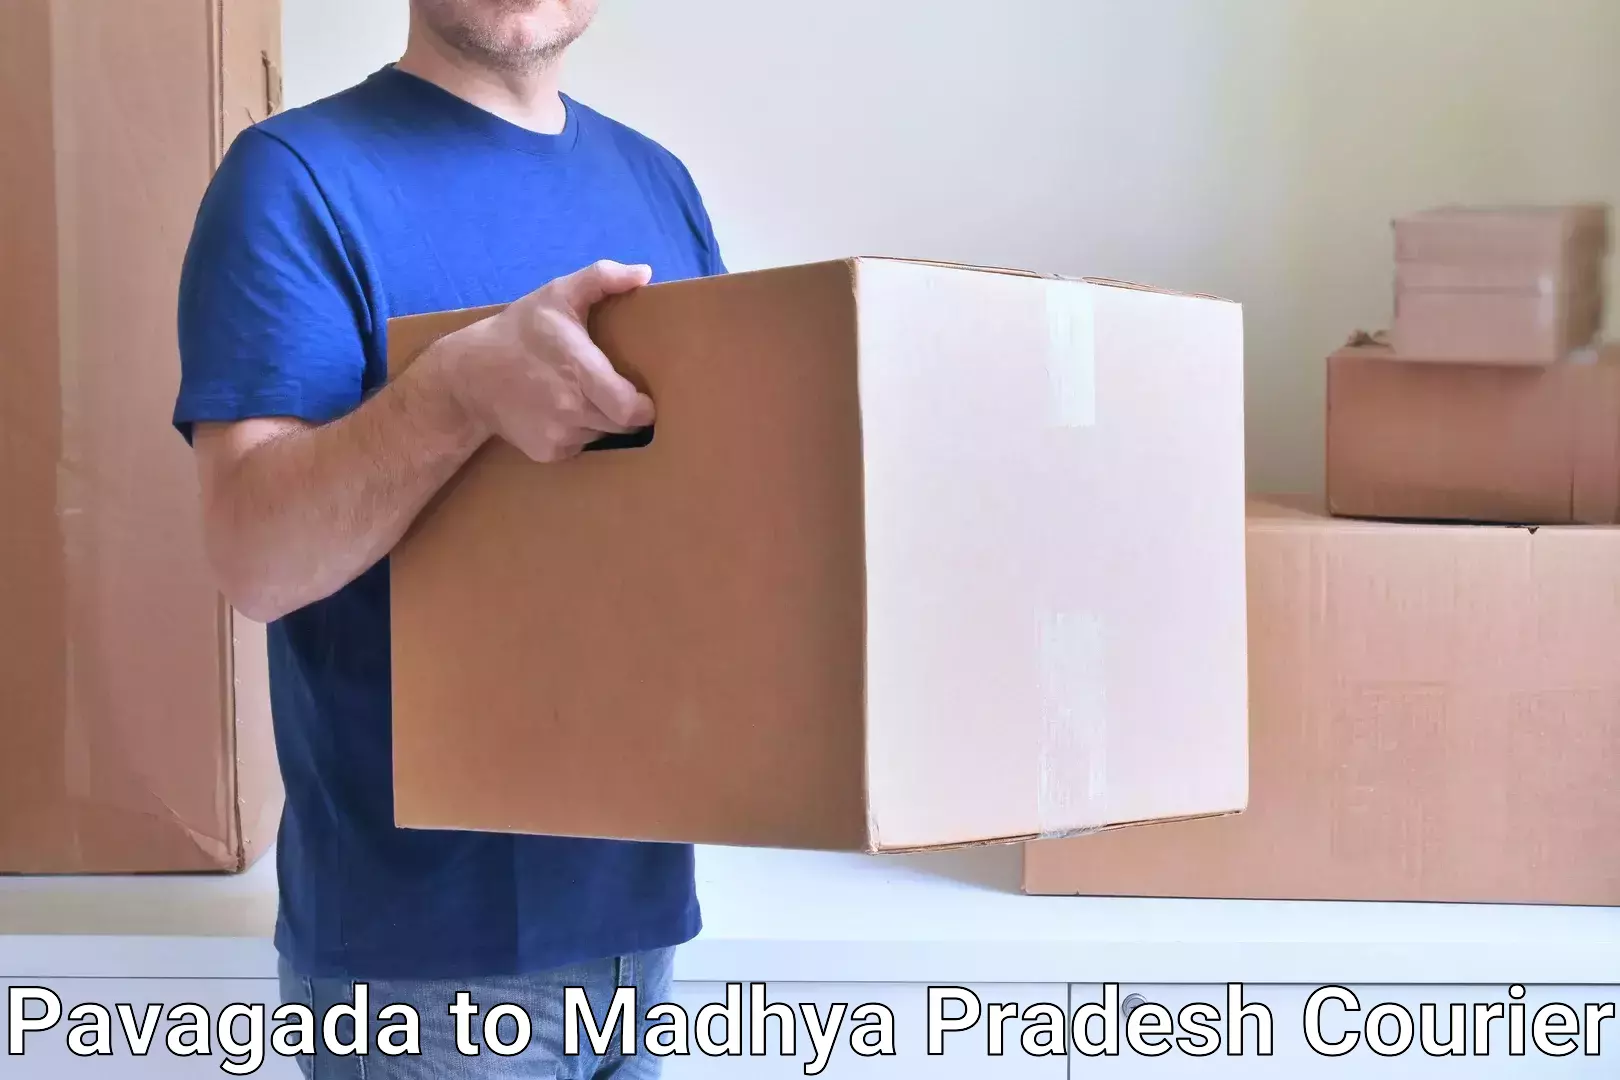 Courier service efficiency Pavagada to Morar